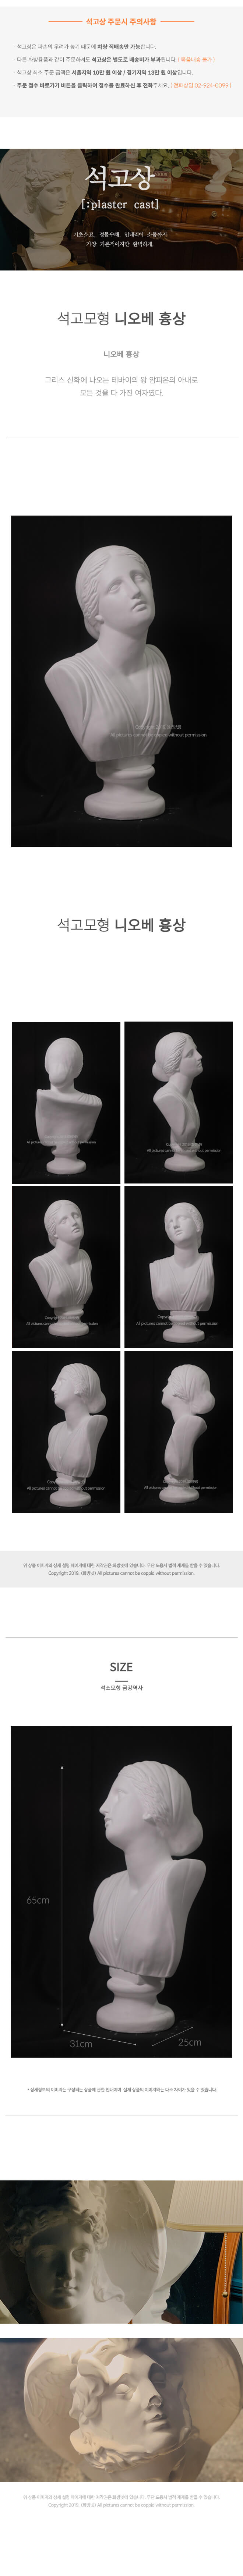 니오베 흉상 31 x 65 cm 석고모형 , 석고상, 조각상, 인테리어 소품